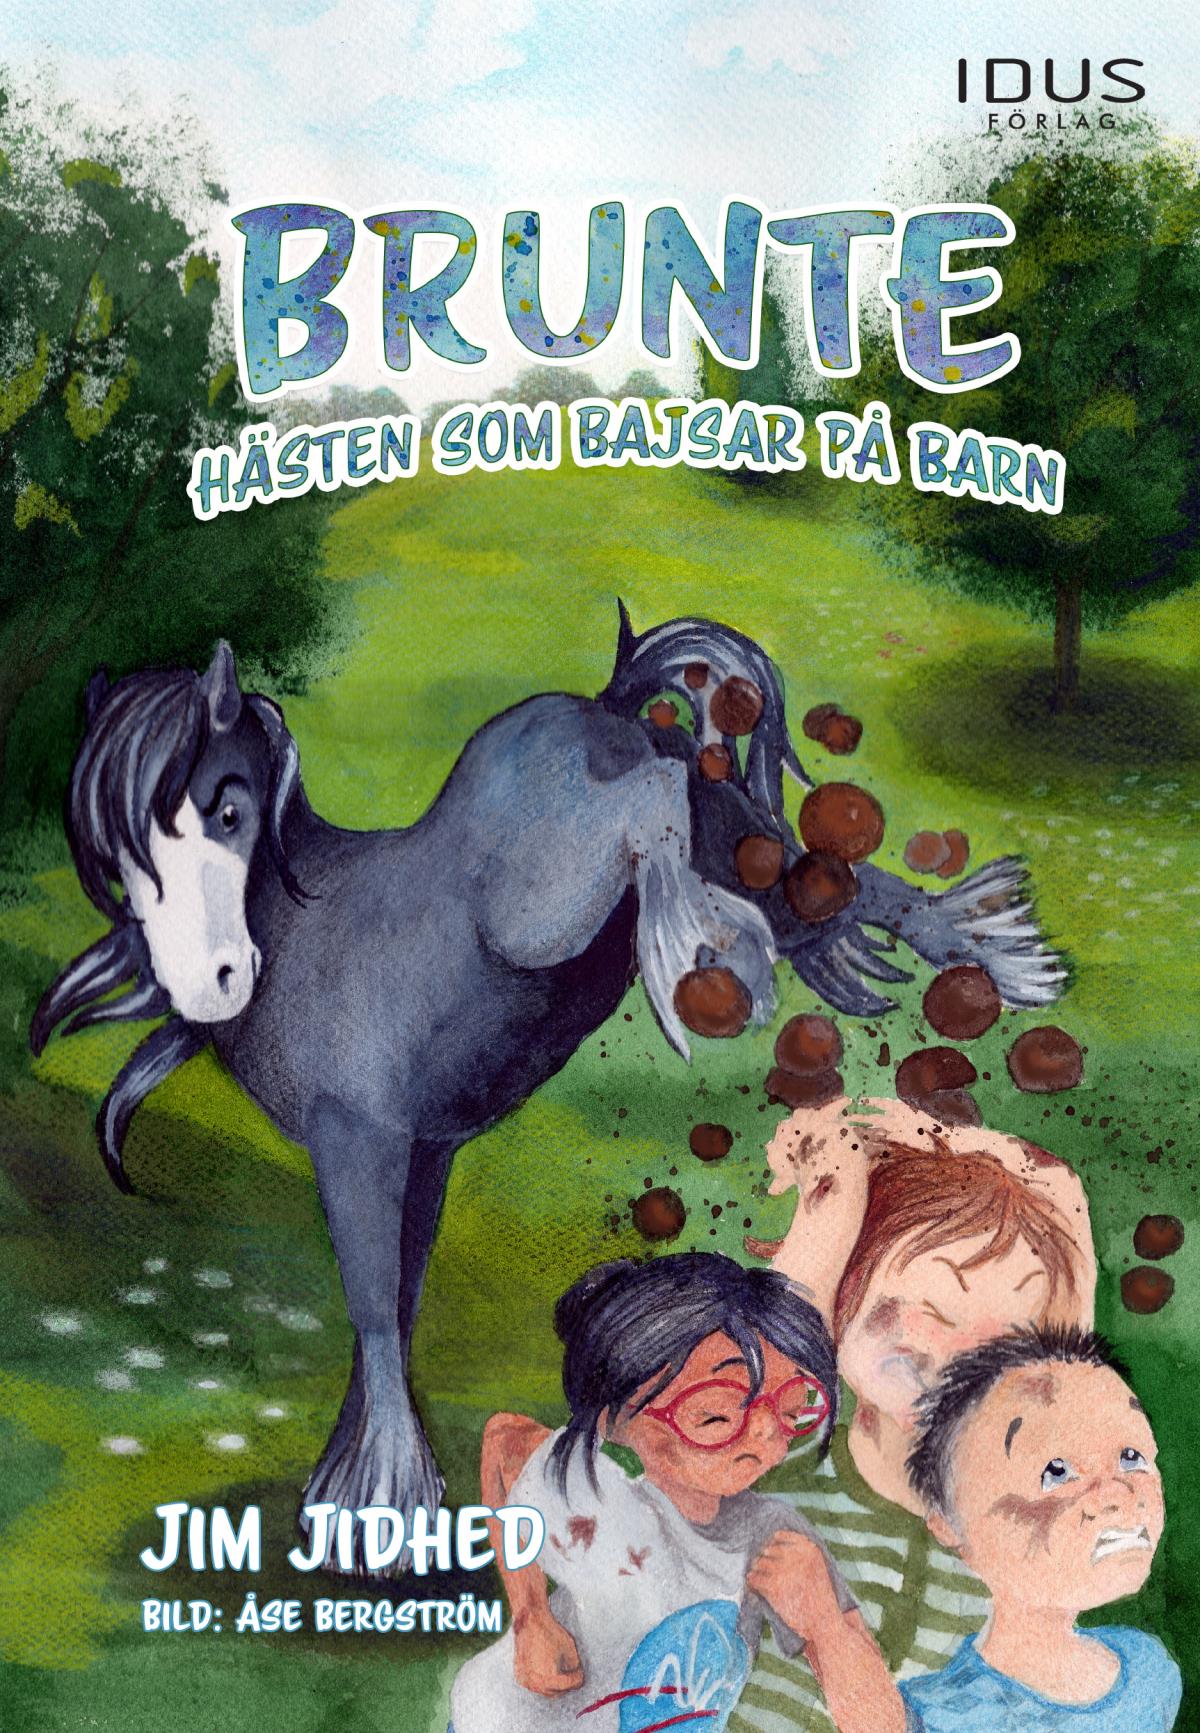 Brunte - Hästen Som Bajsar På Barn